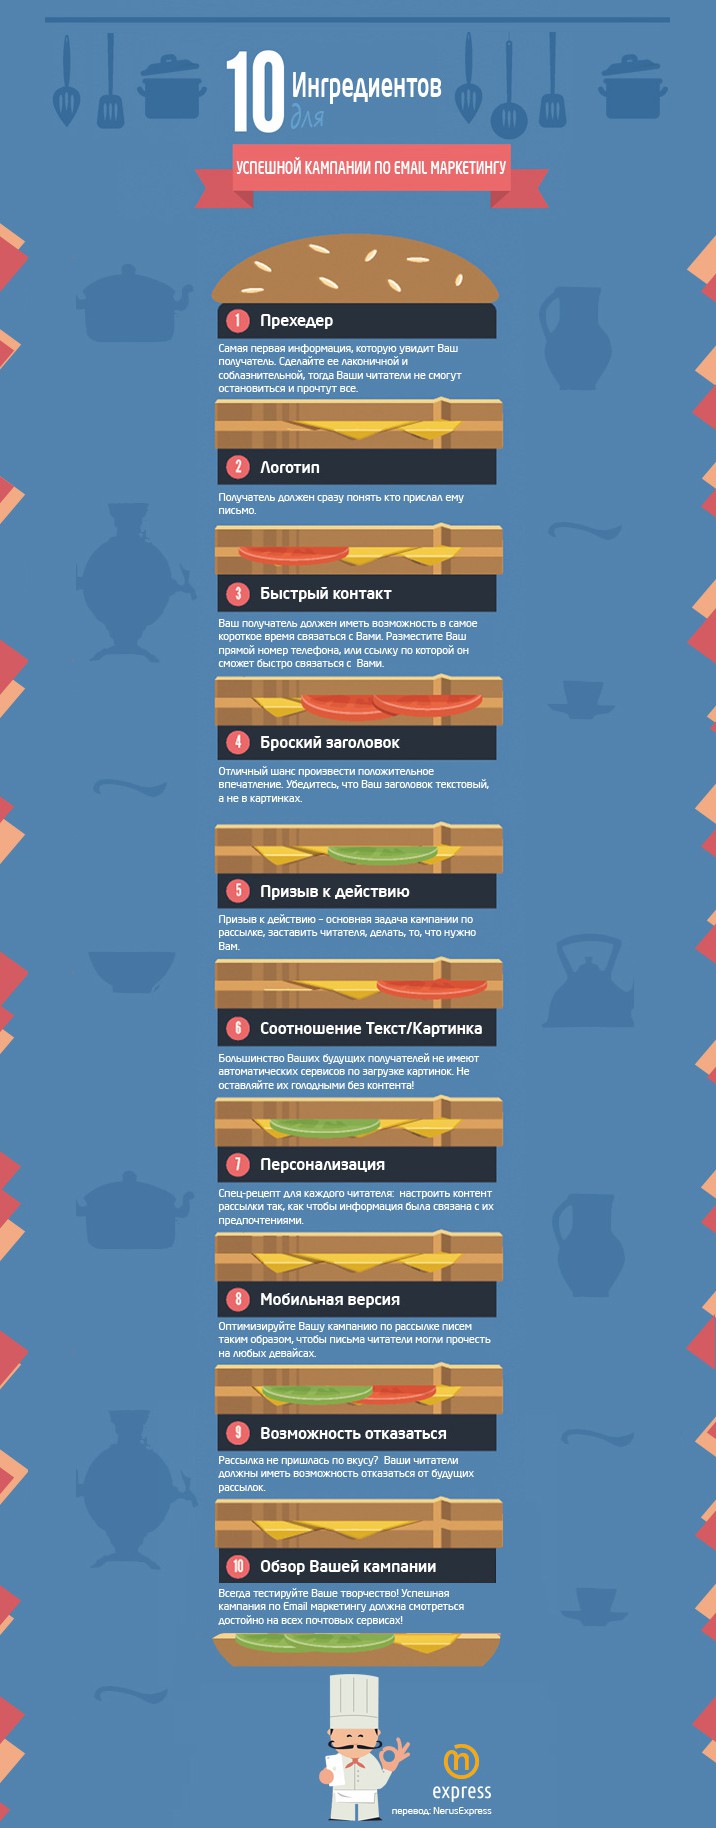 10 ингредиентов для успешной кампании по Email маркетингу. Инфографика